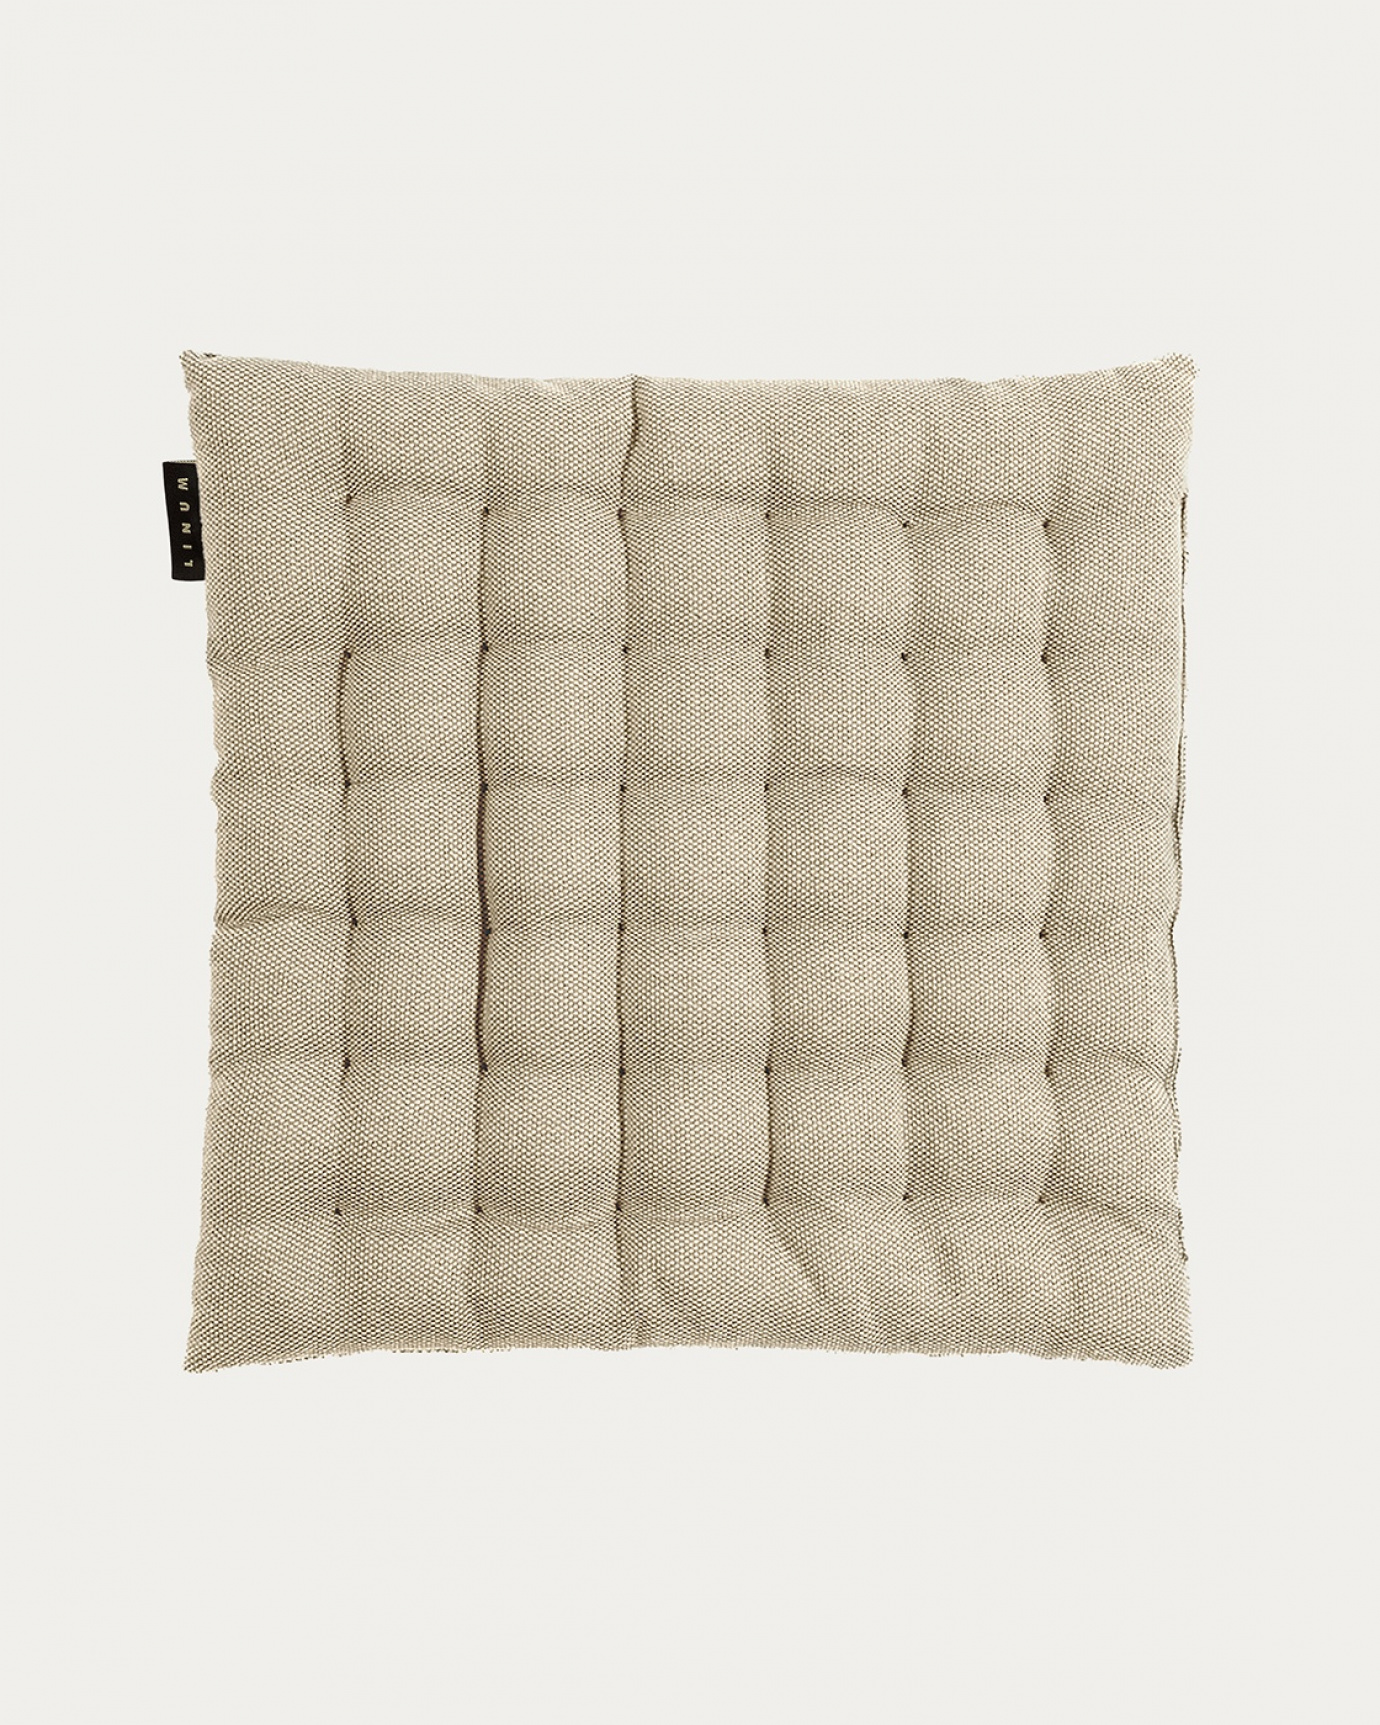 Immagine prodotto marrone bronzo PEPPER cuscini sedie di cotone con imbottitura in poliestere di LINUM DESIGN. Dimensioni 40x40 cm.